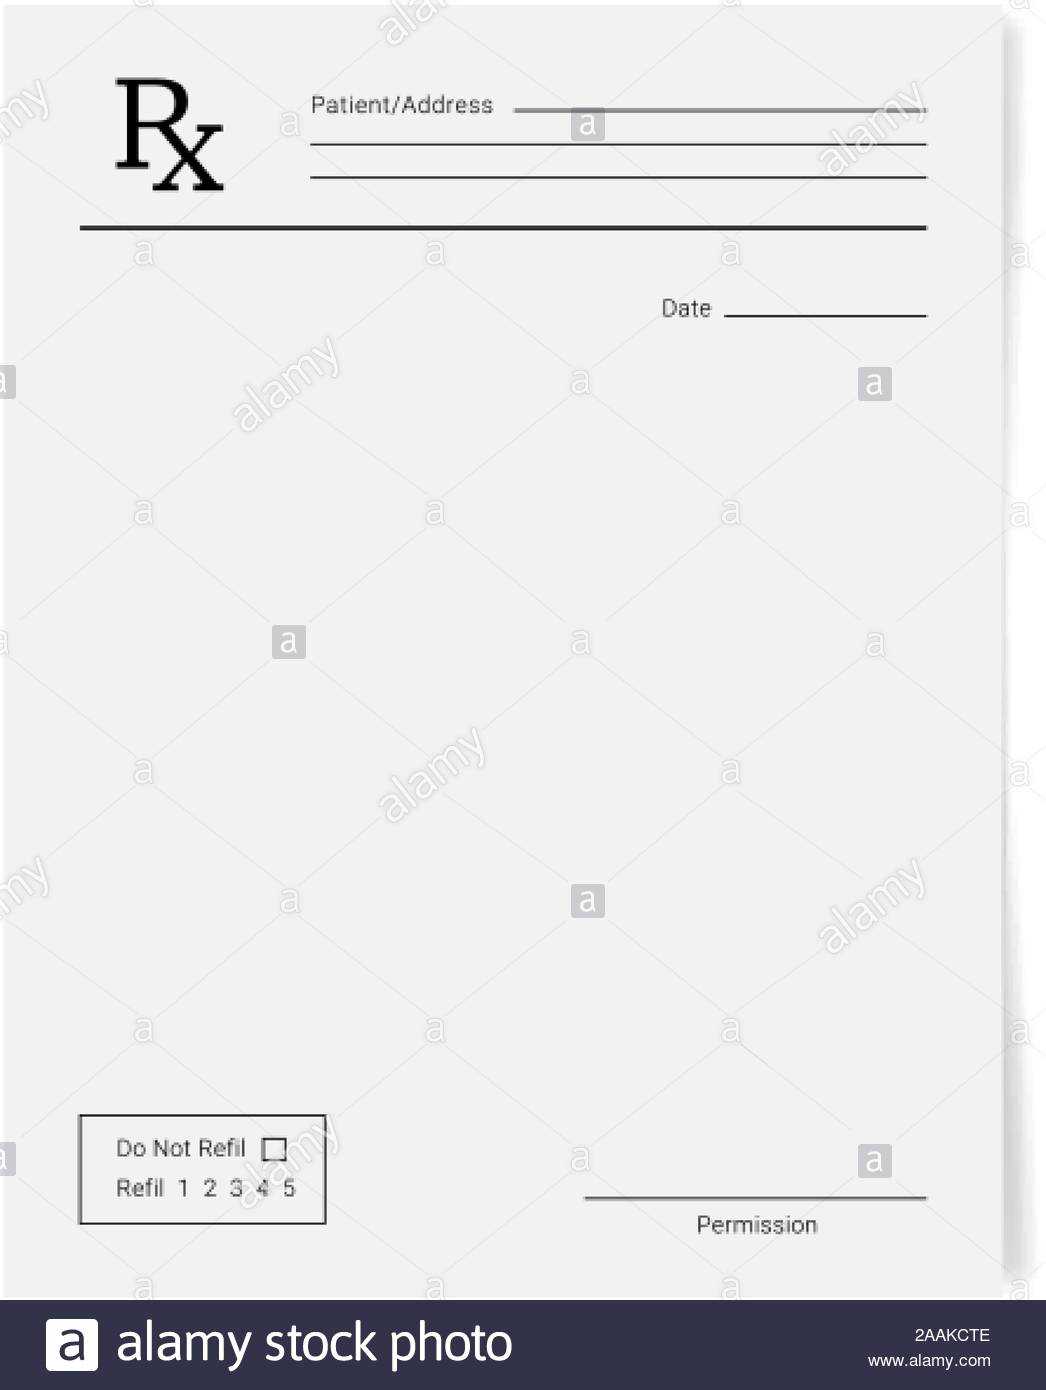 Rx Pad Template. Medical Regular Prescription Form Stock For Blank Prescription Pad Template